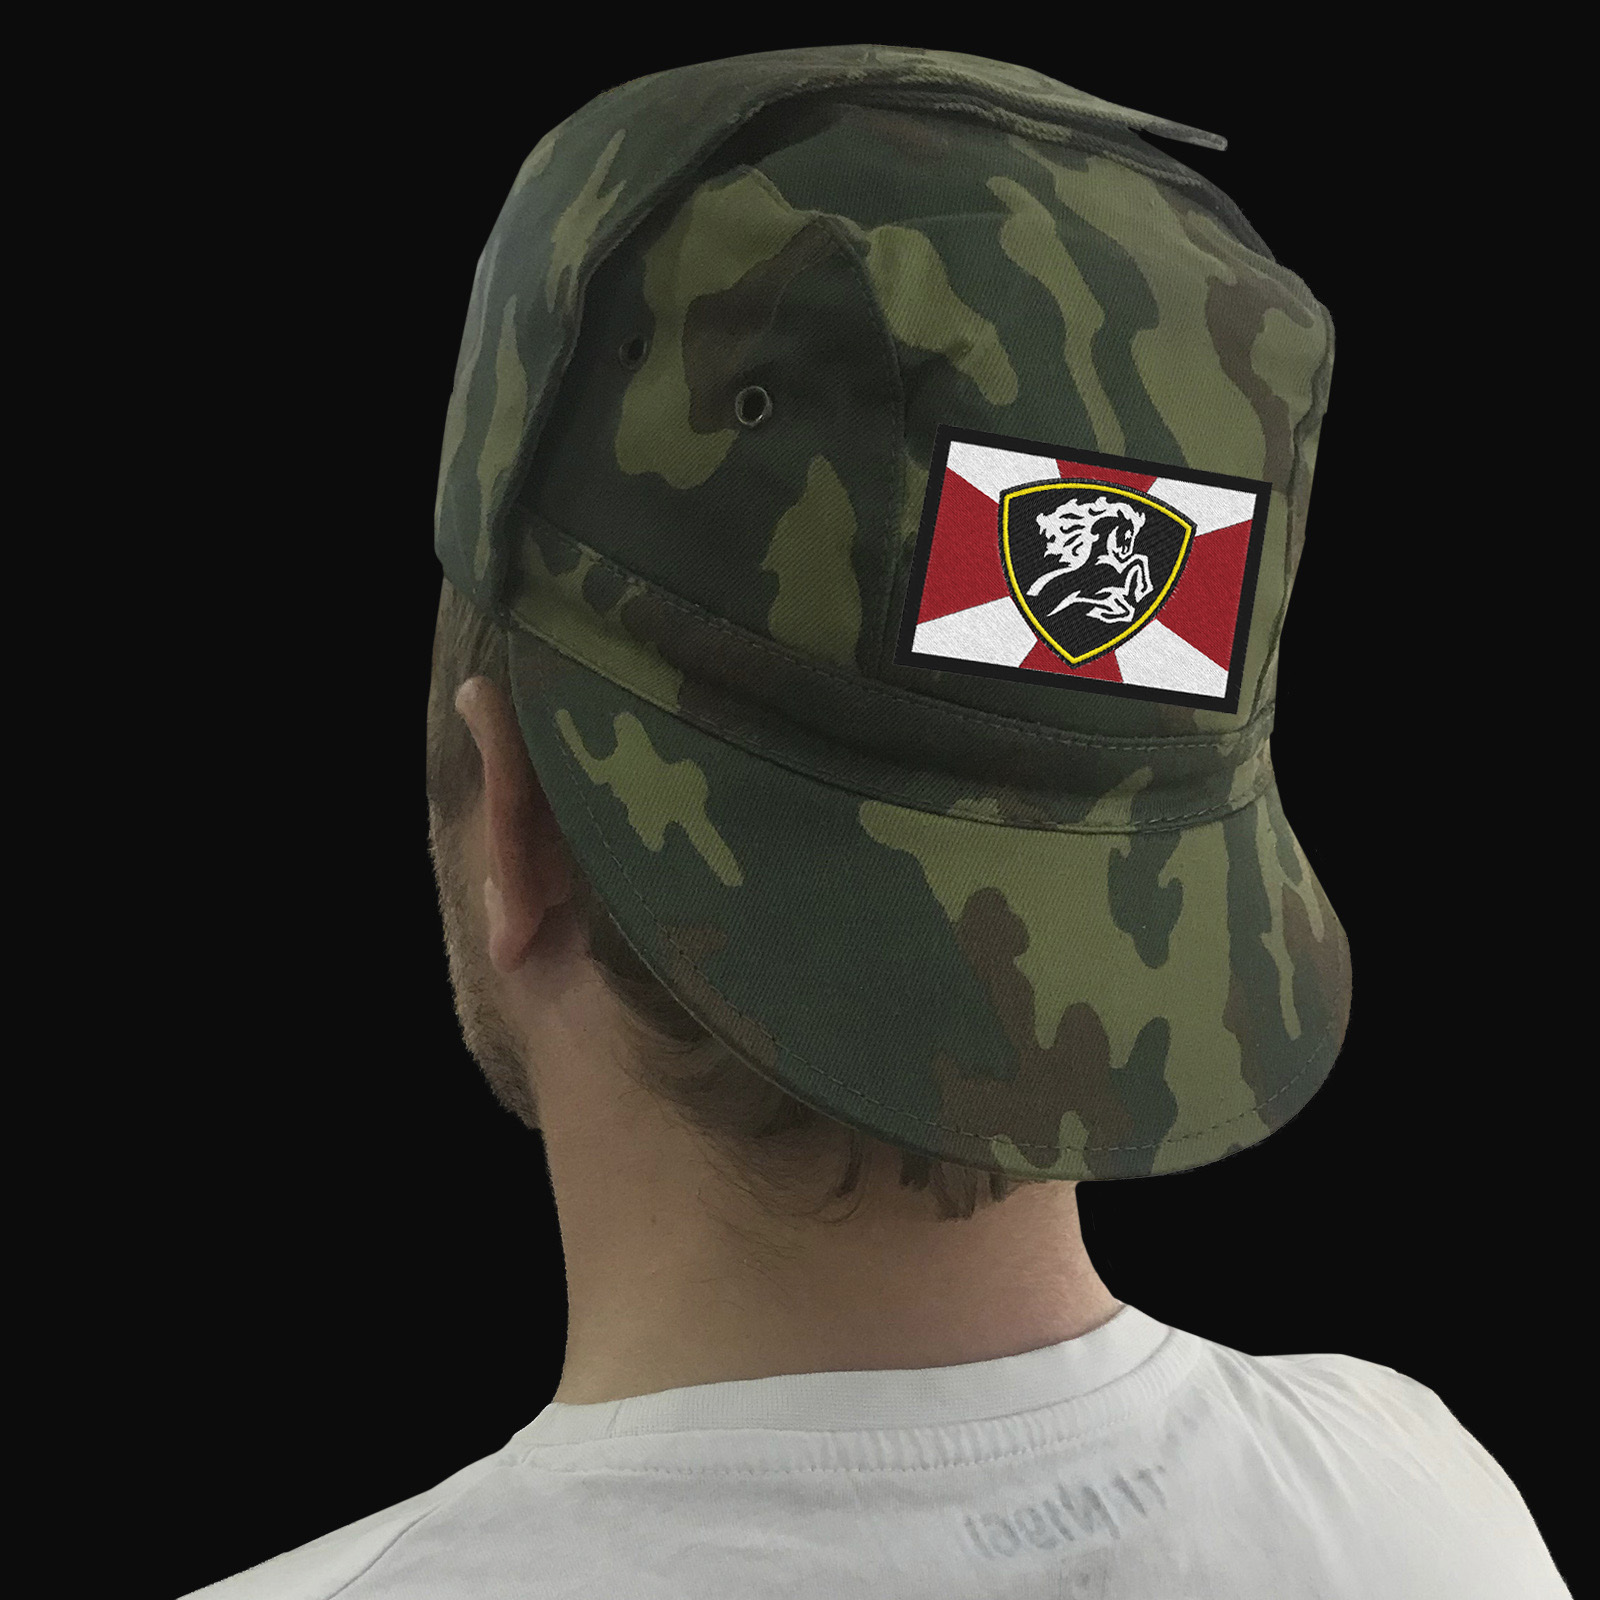 Купить кепку с символикой МВД России